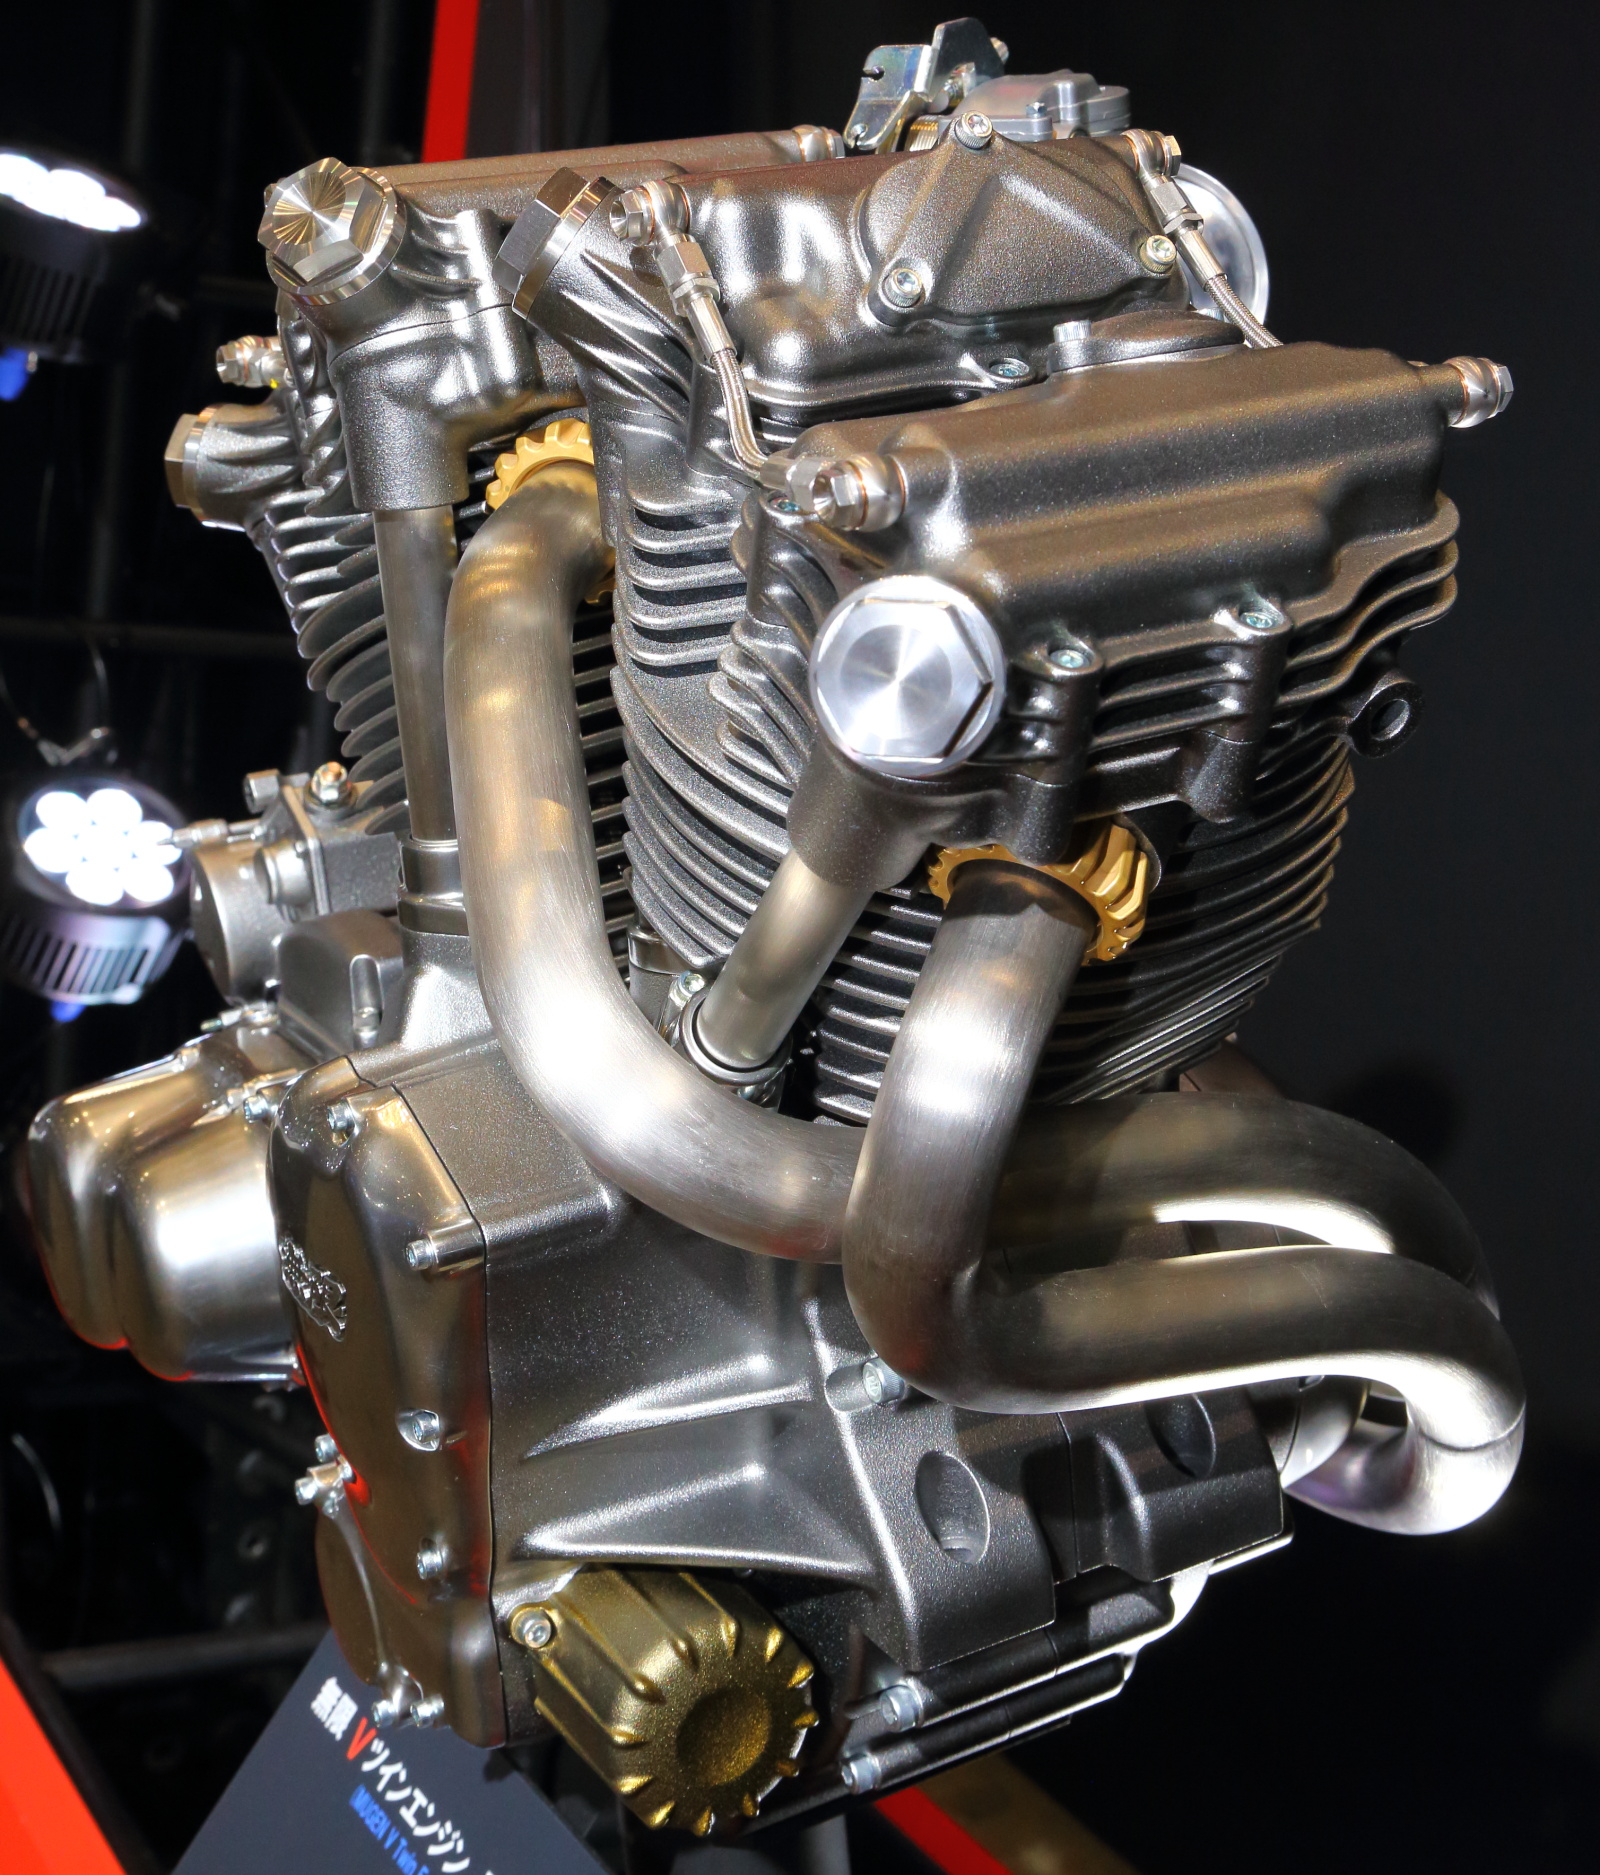 Mugen MRV1400 engine concept